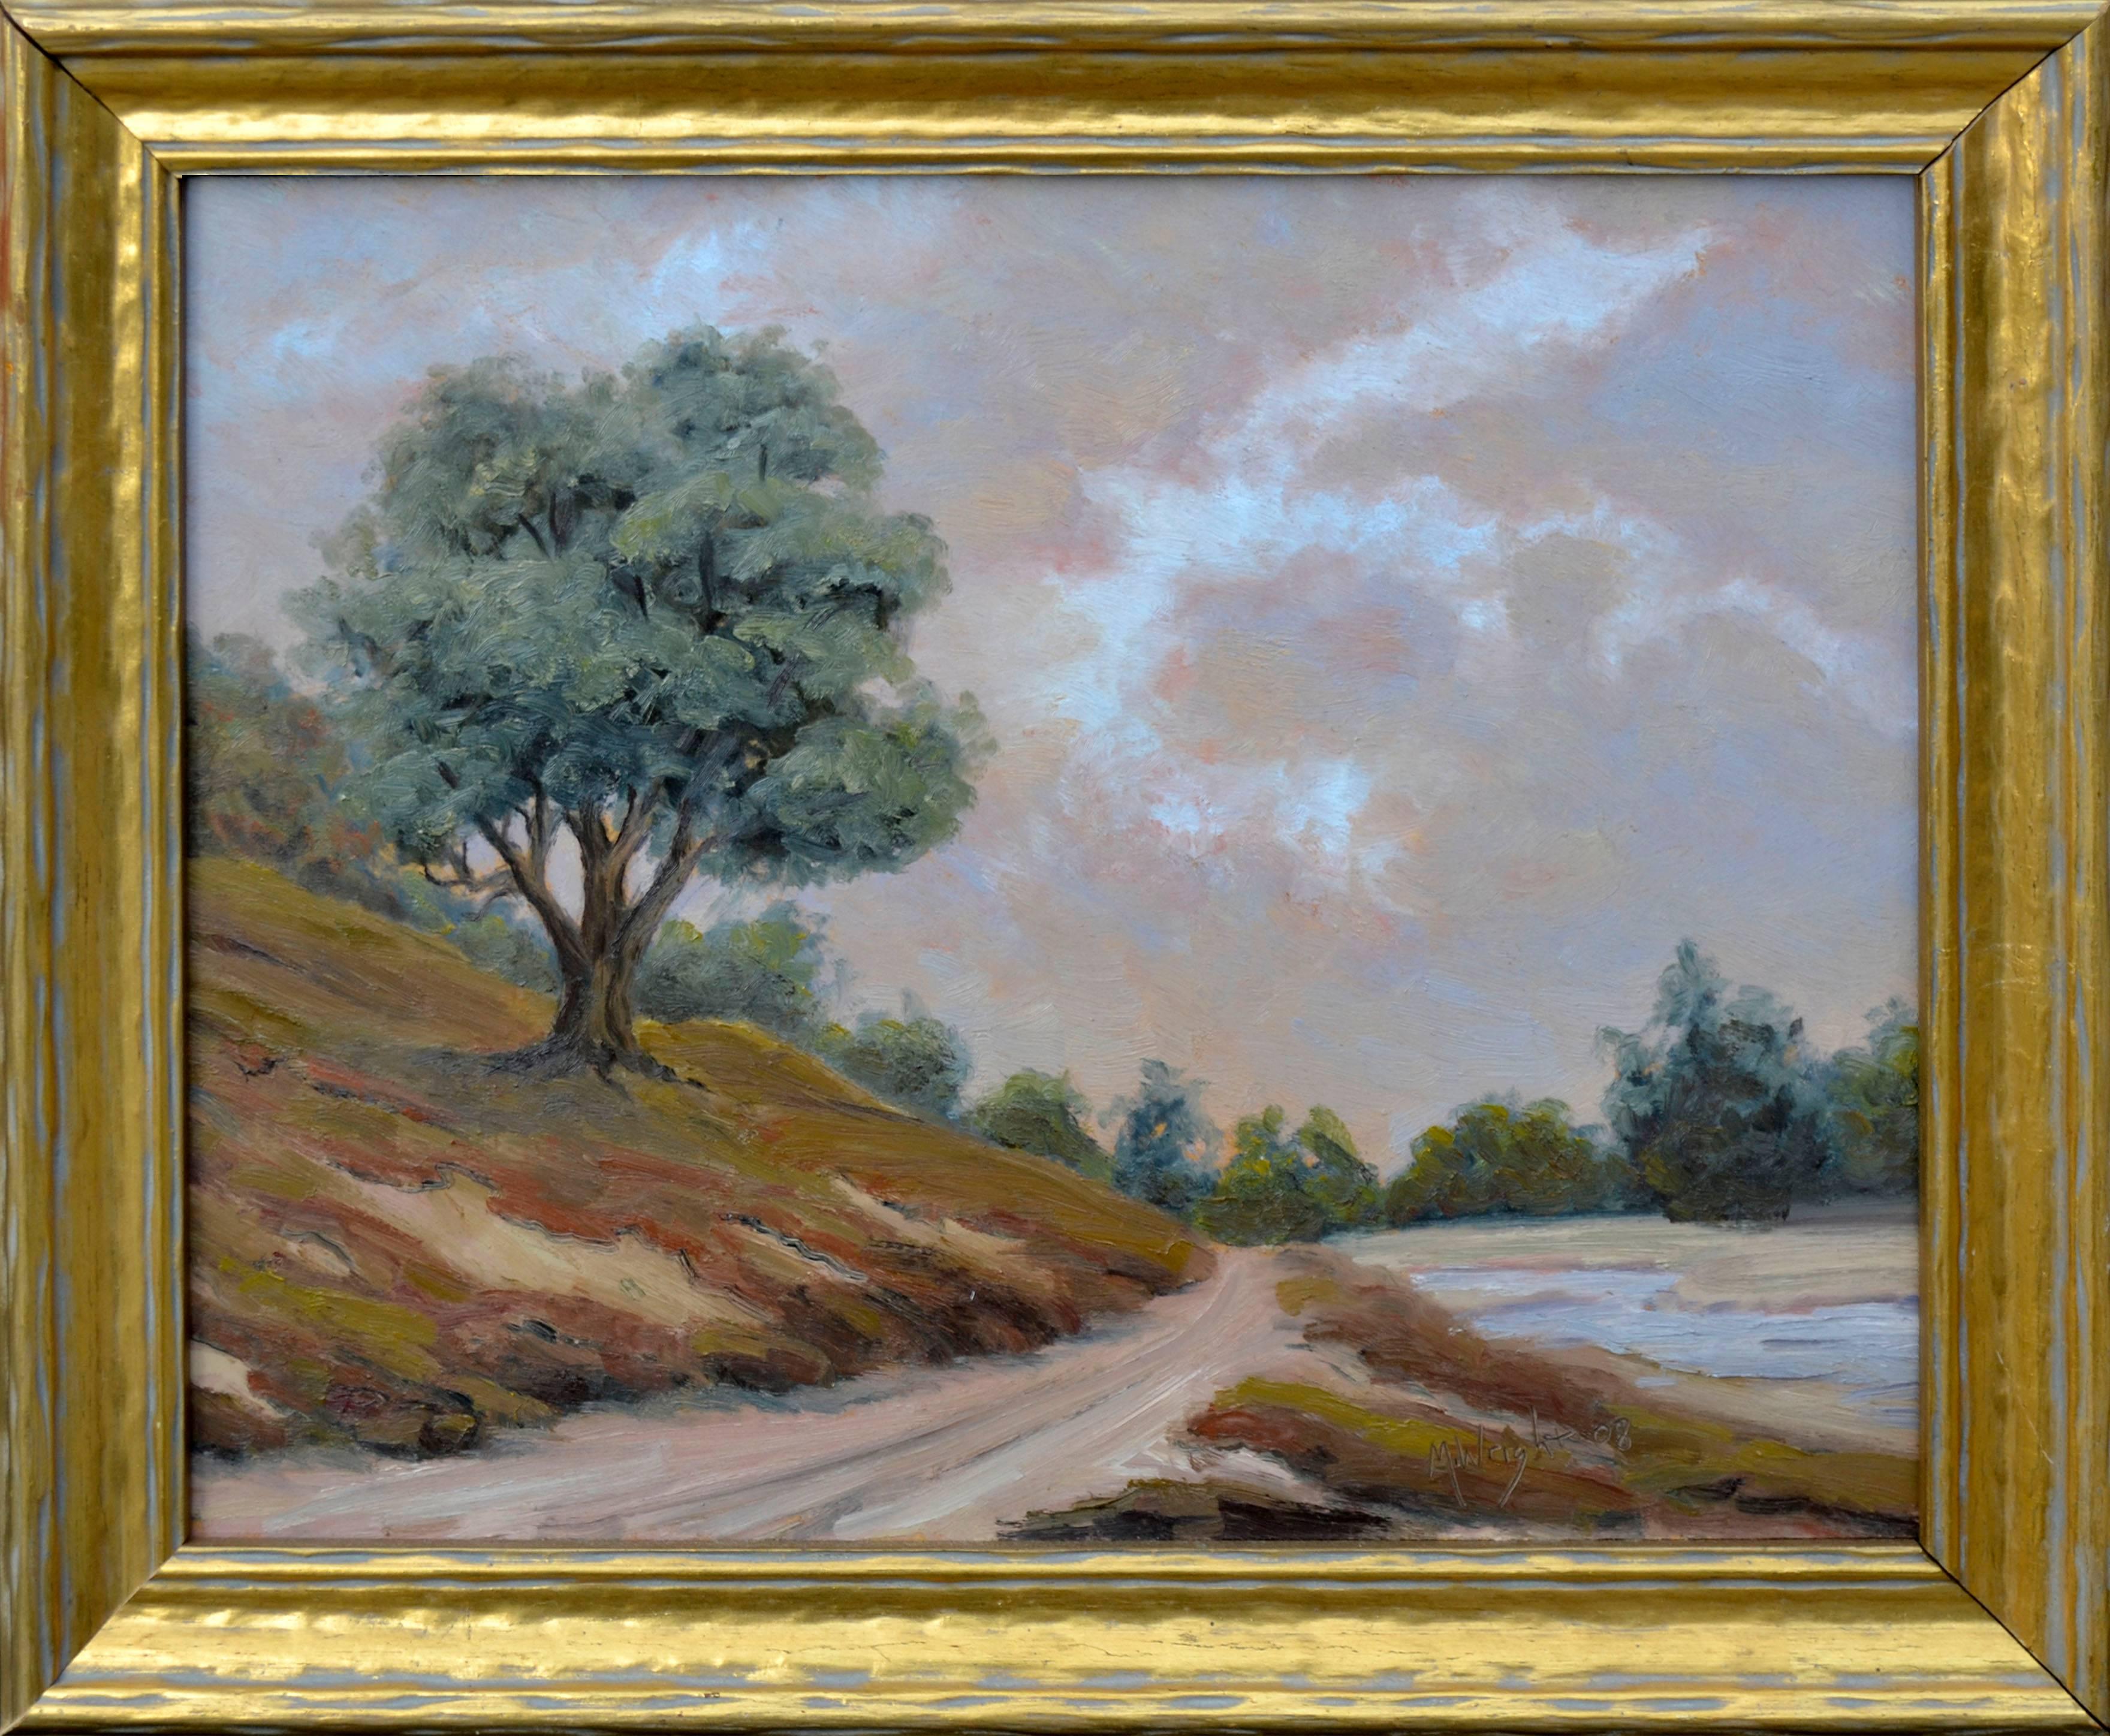 Mike Wright Landscape Painting - Old Slough Road - Elkhorn Slough Landscape 